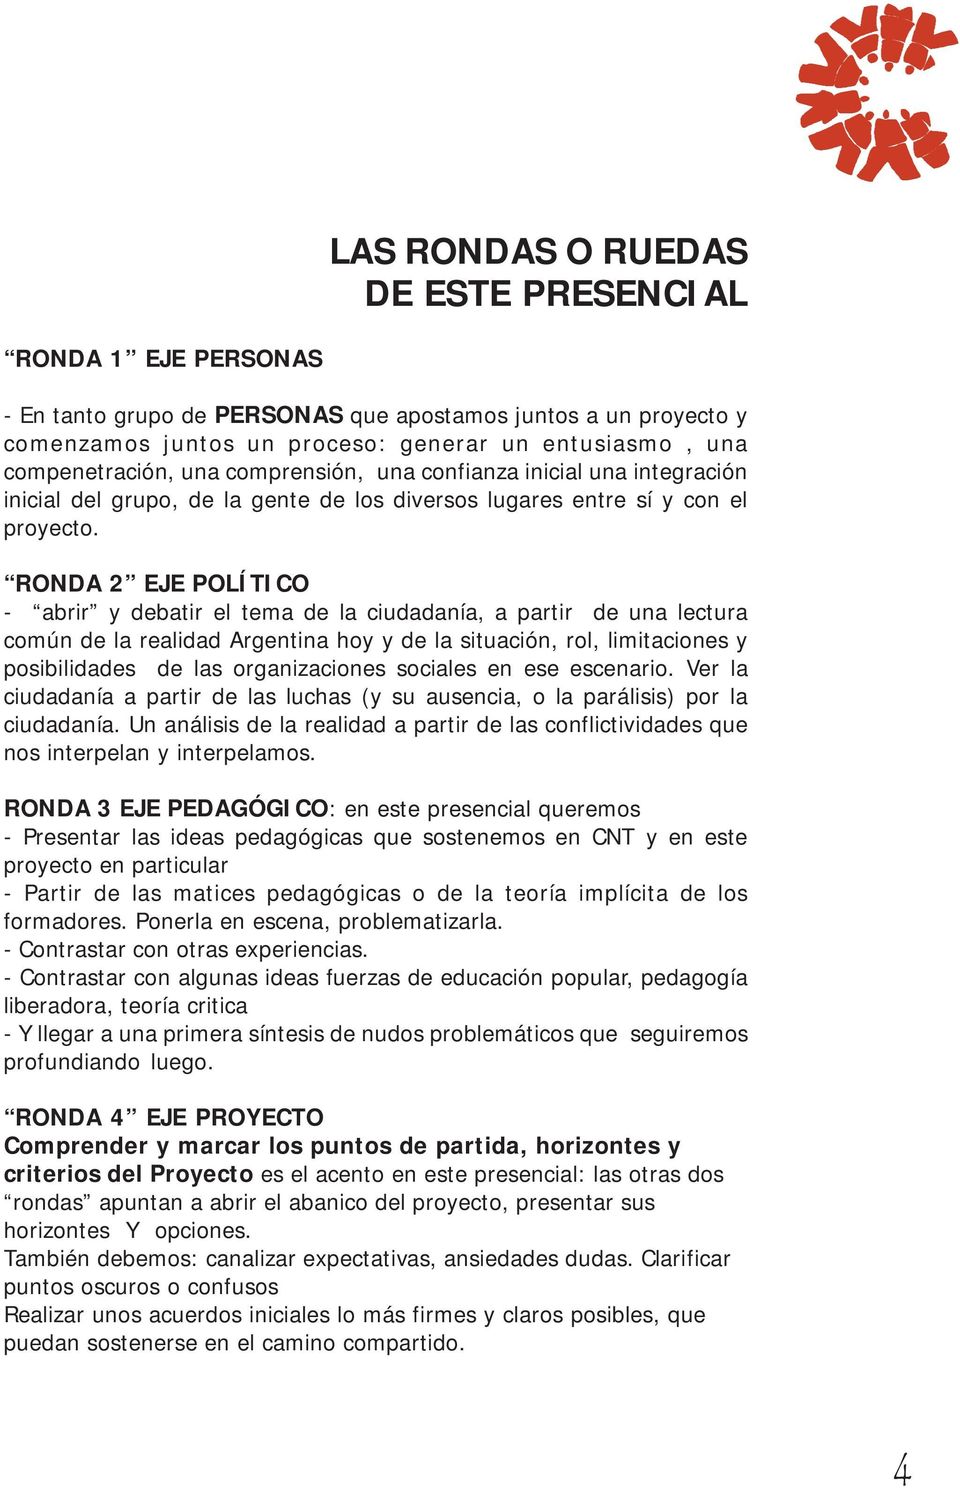 RONDA 2 EJE POLÍTICO - abrir y debatir el tema de la ciudadanía, a partir de una lectura común de la realidad Argentina hoy y de la situación, rol, limitaciones y posibilidades de las organizaciones